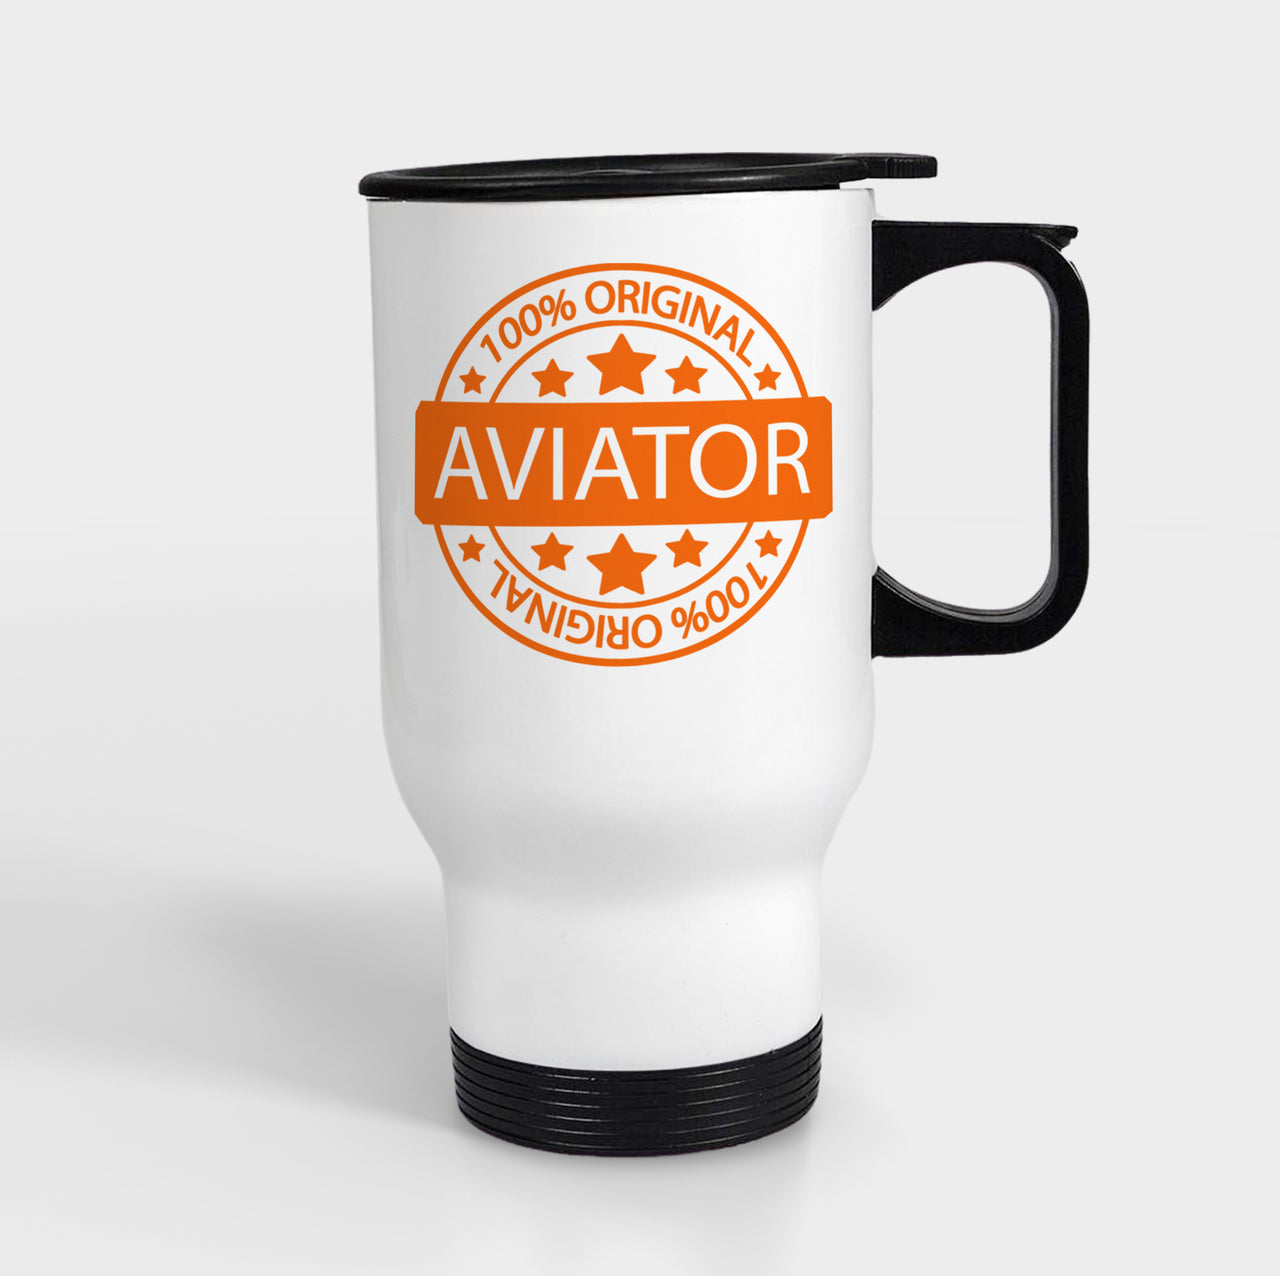 %100 Original Aviator Designed Travel Mugs (With Holder)